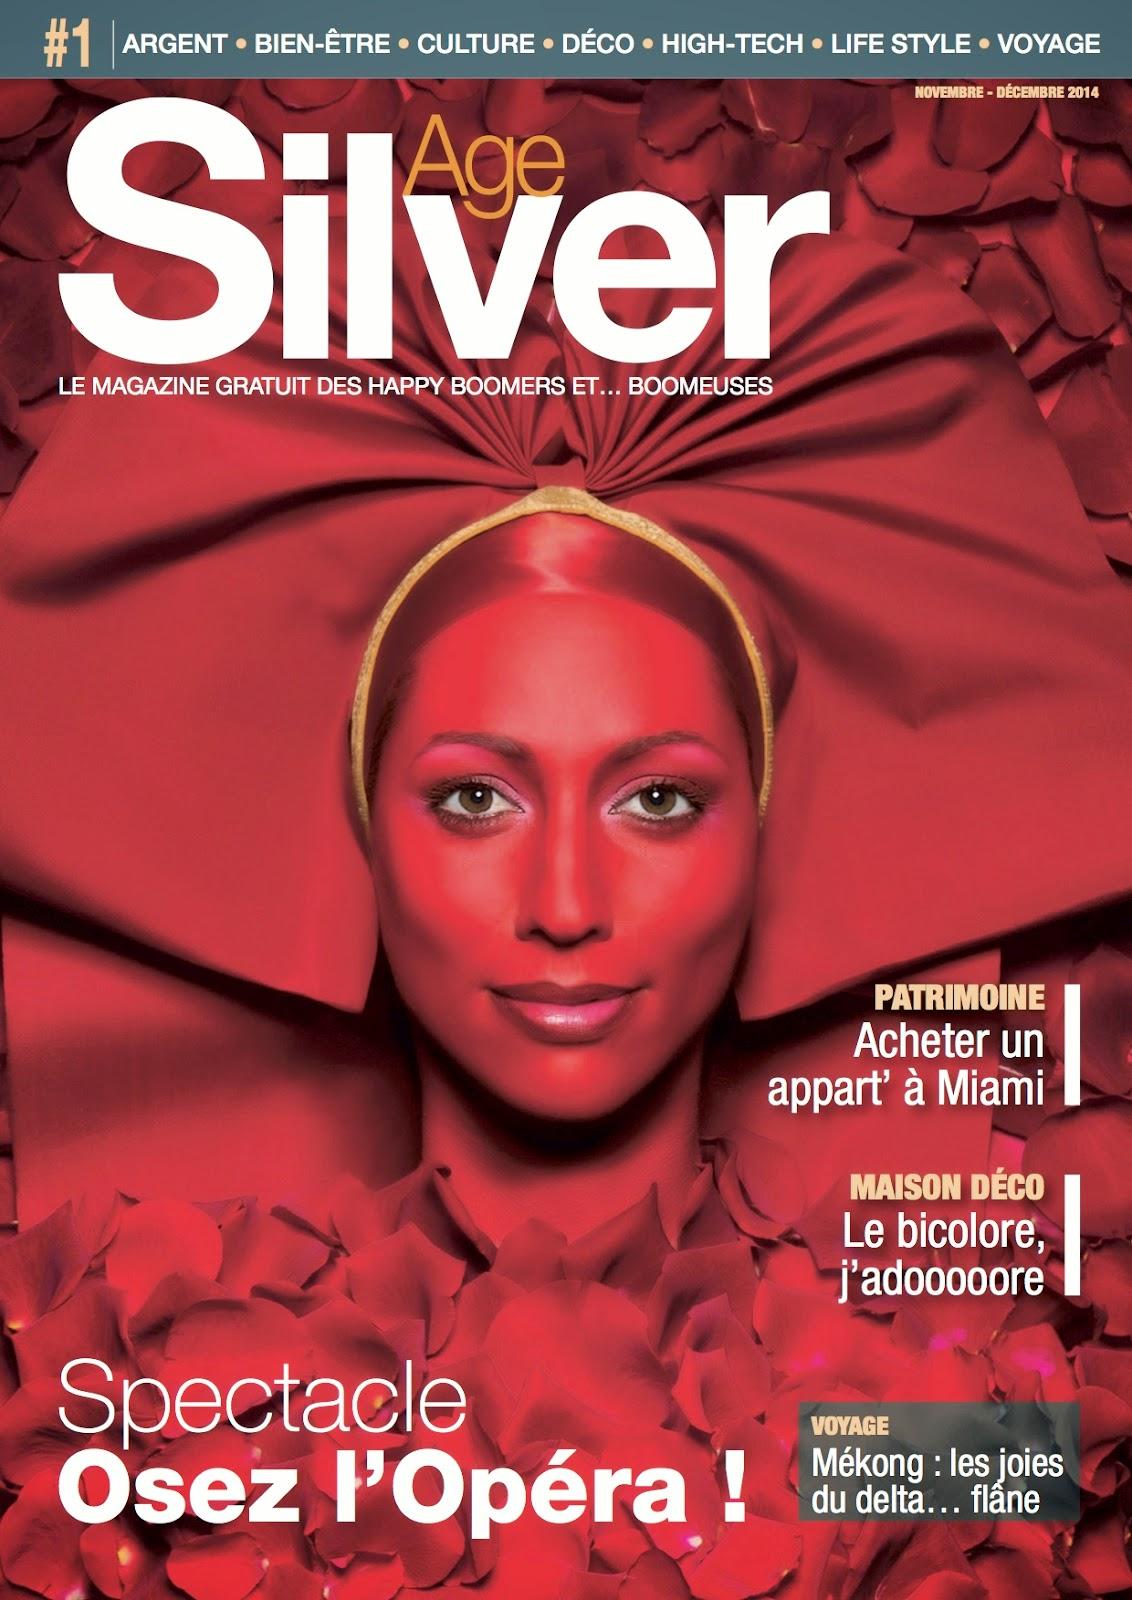 SilverAge : un nouveau magazine pour les happyboomers